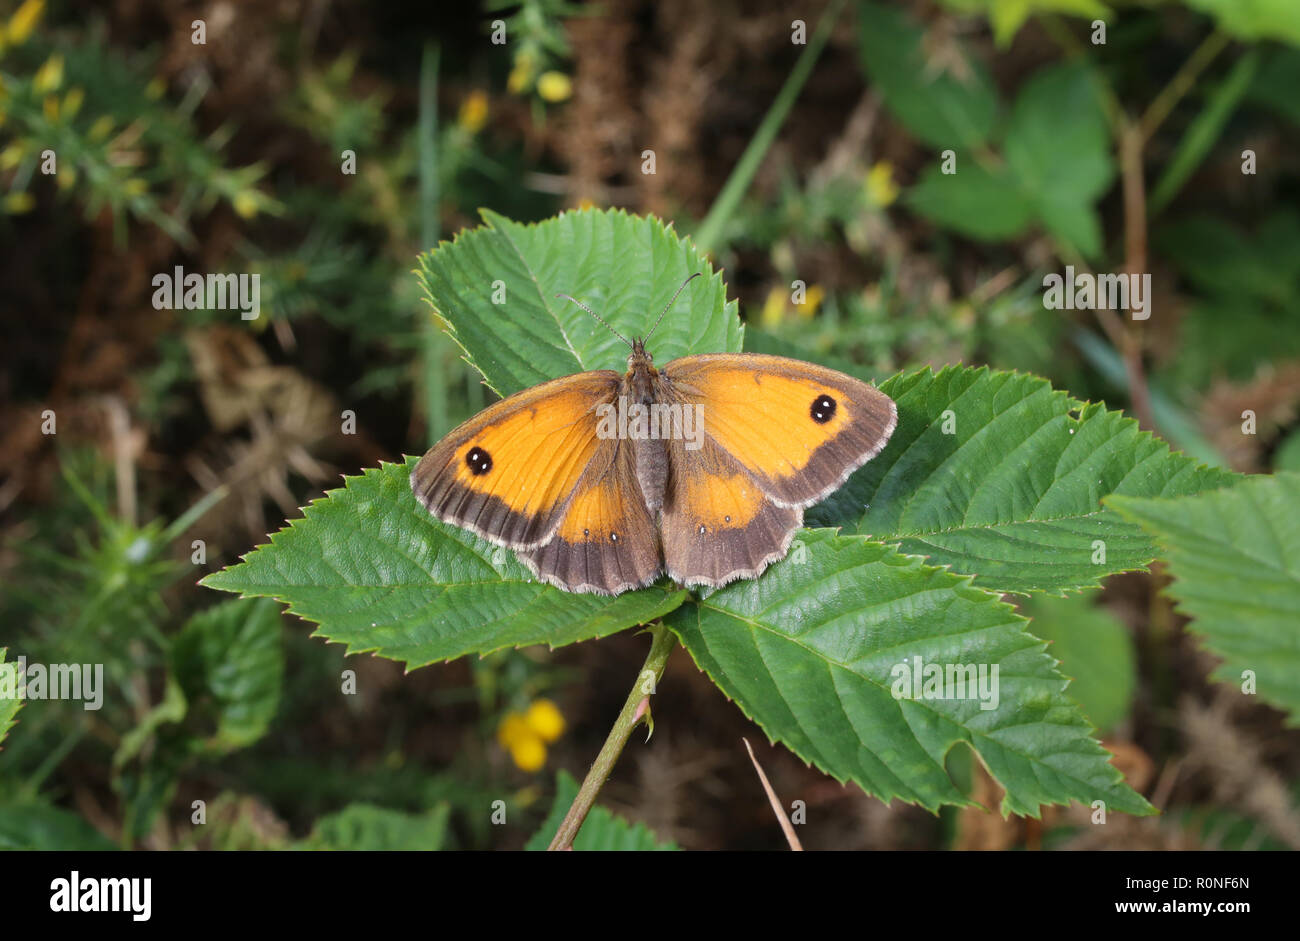 Un Gatekeeper butterfly appoggiata su una foglia con le sue ali aperte. Visto nelle Midlands inglese nel 2016. Foto Stock